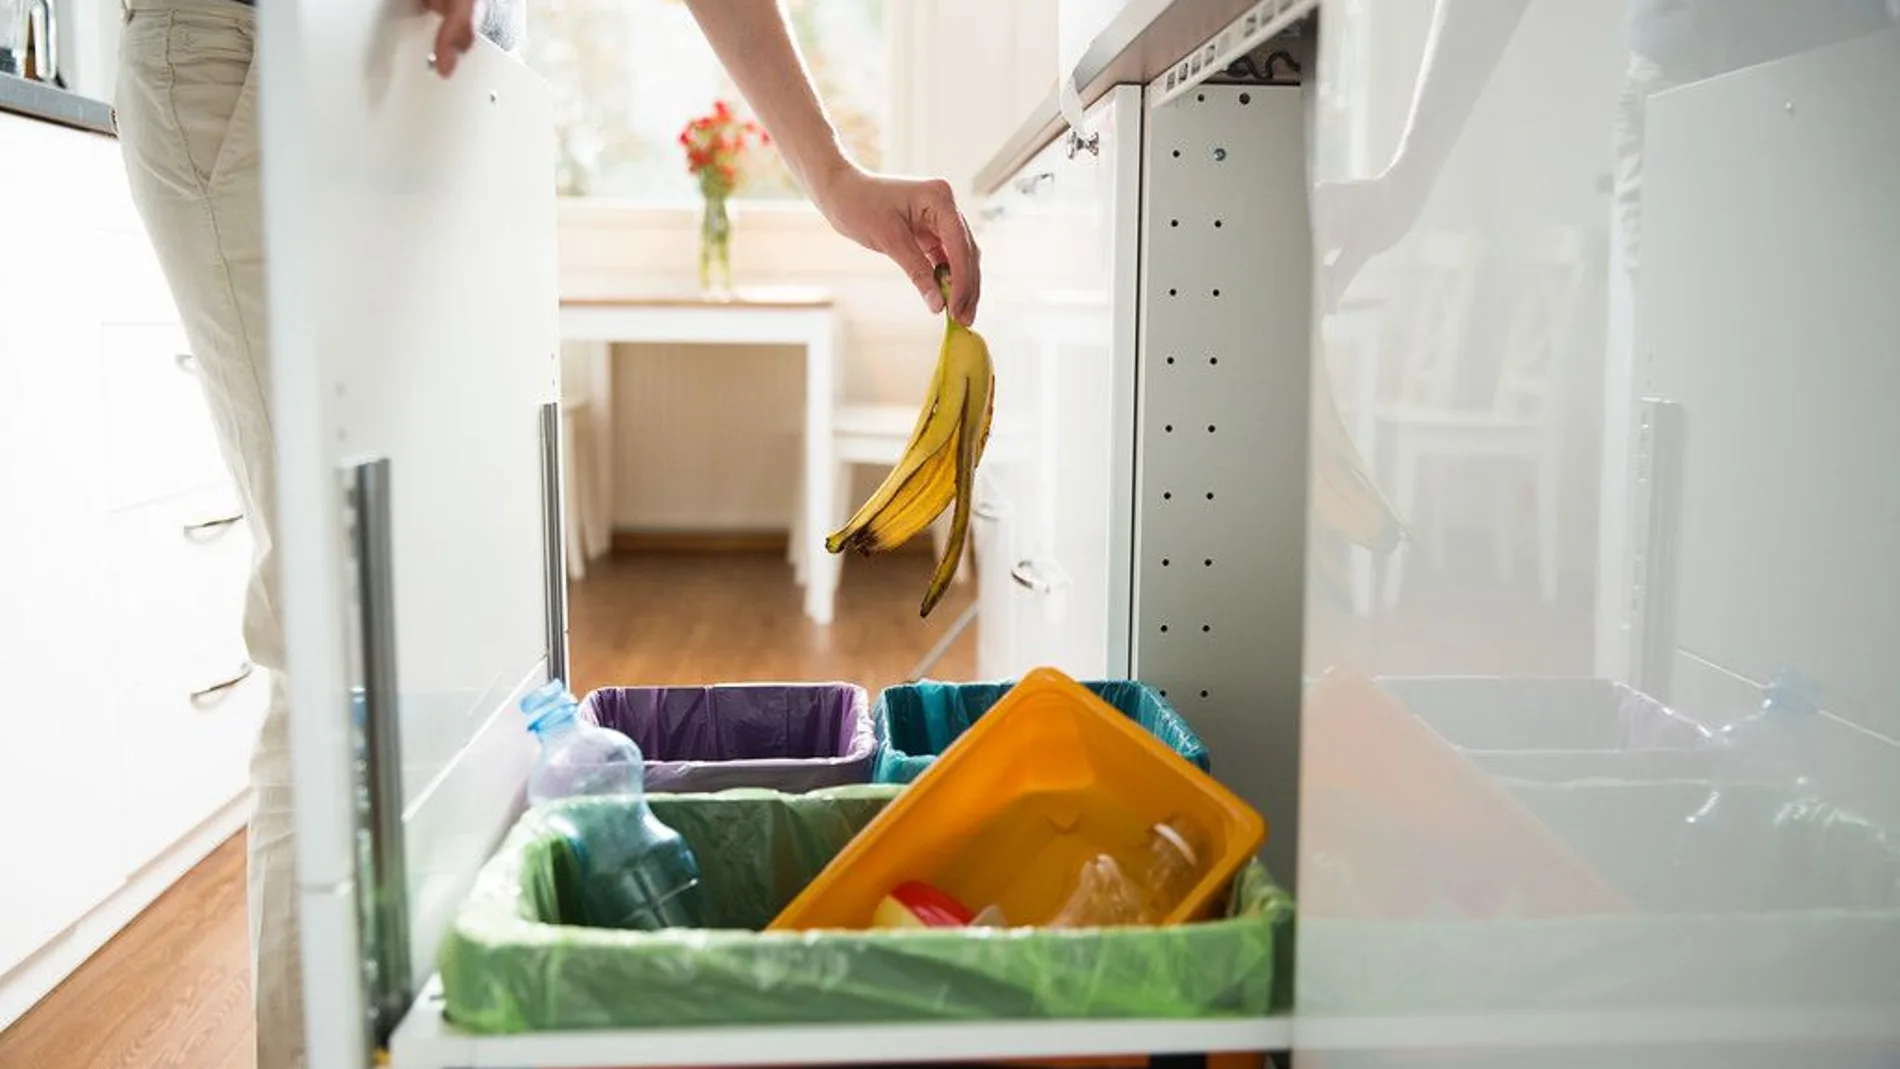 Tanto para hogares grandes como pequeños, existe una amplia gama de soluciones y trucos de bricolaje para ordenar ese espacio en casa que destinamos a separar los residuos domésticos